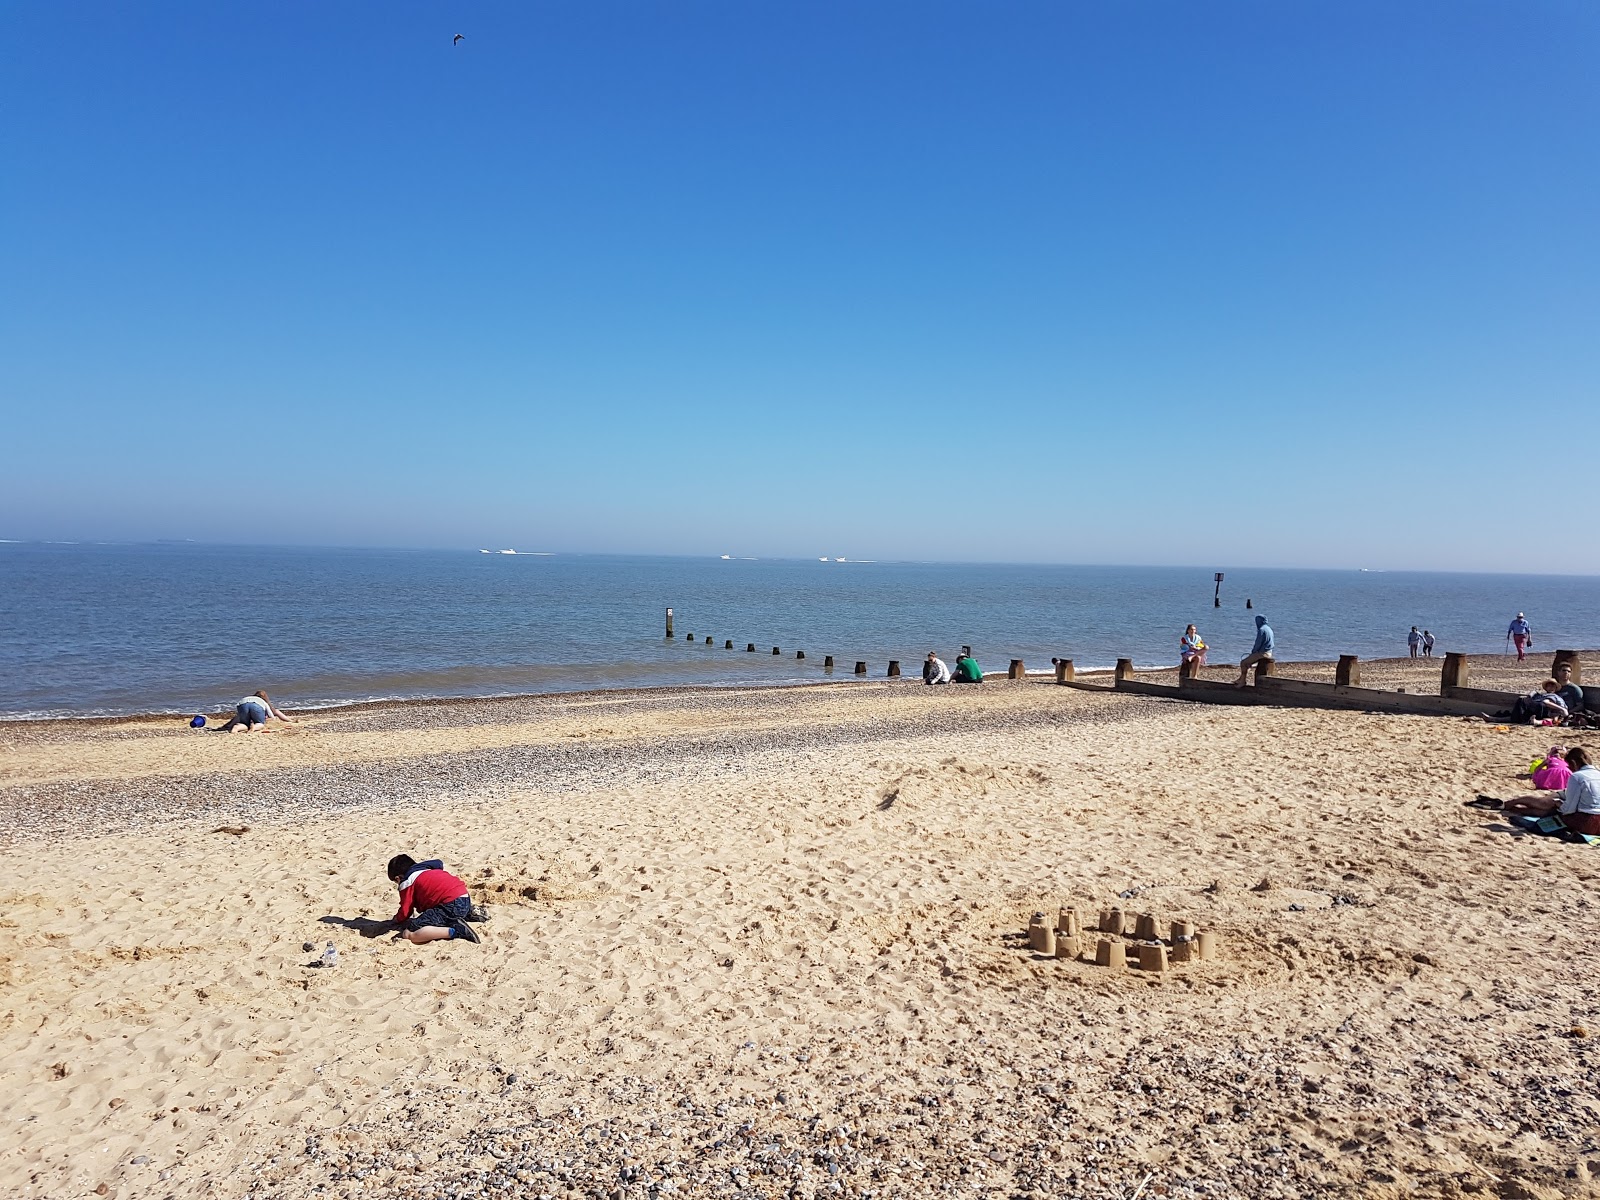 Dunwich beach II'in fotoğrafı parlak kum yüzey ile